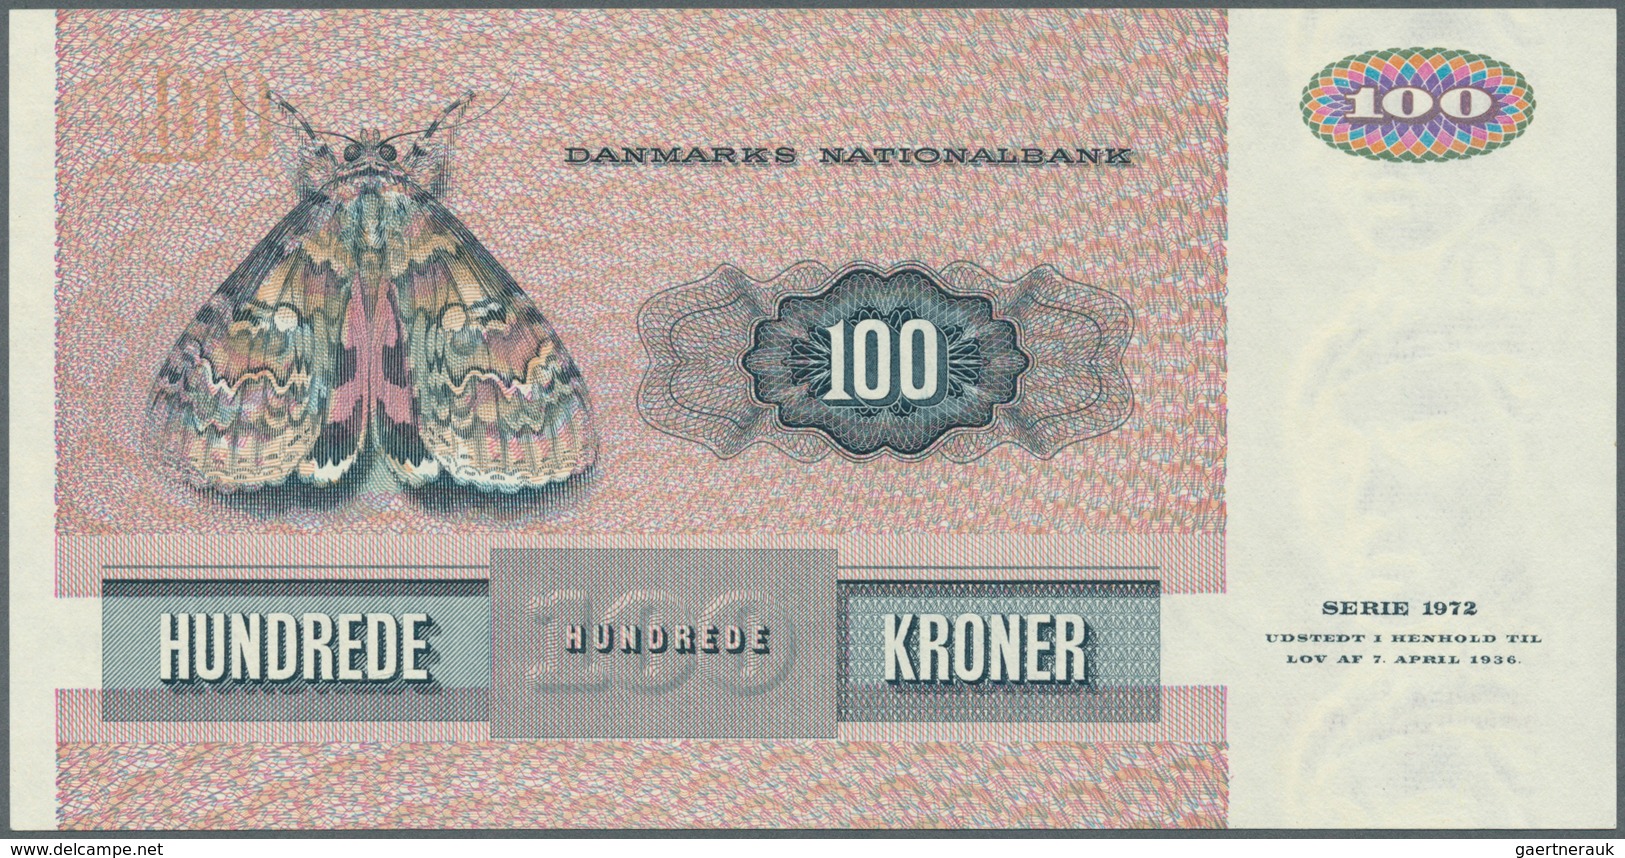 Denmark  / Dänemark: set of 10 notes containing 10 Kroner 1976 & 1977 P. 48 (XF & UNC), 2x 20 Kroner